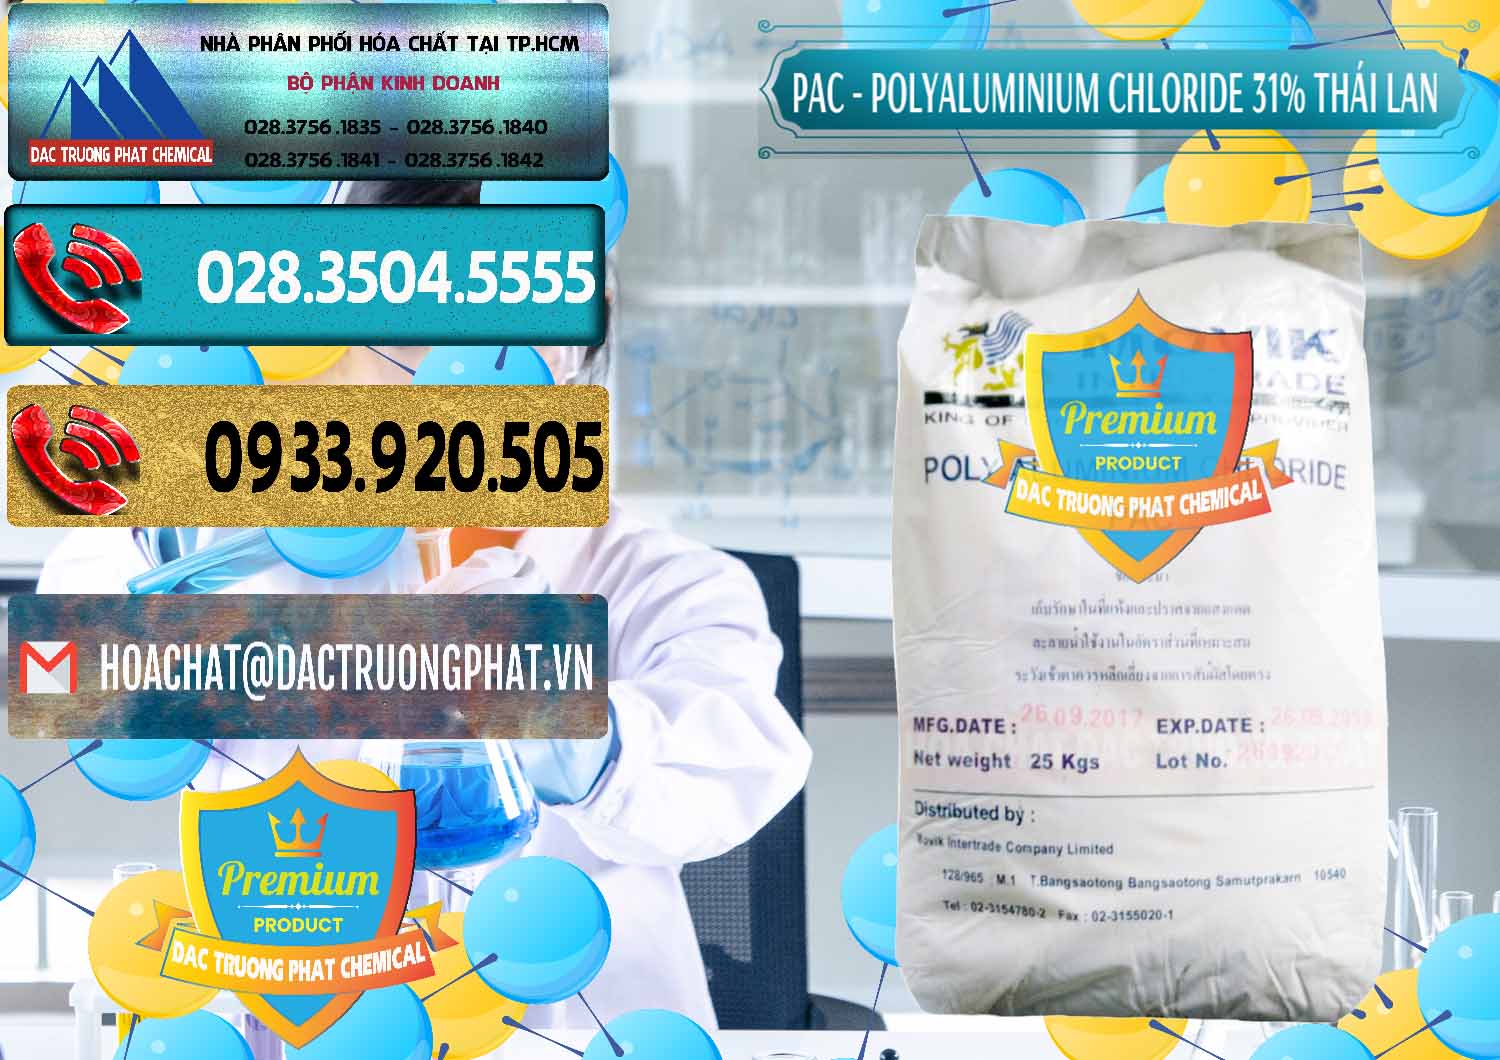 Nơi kinh doanh _ bán PAC - Polyaluminium Chloride 31% Thái Lan Thailand - 0469 - Công ty chuyên cung cấp & bán hóa chất tại TP.HCM - hoachatdetnhuom.com